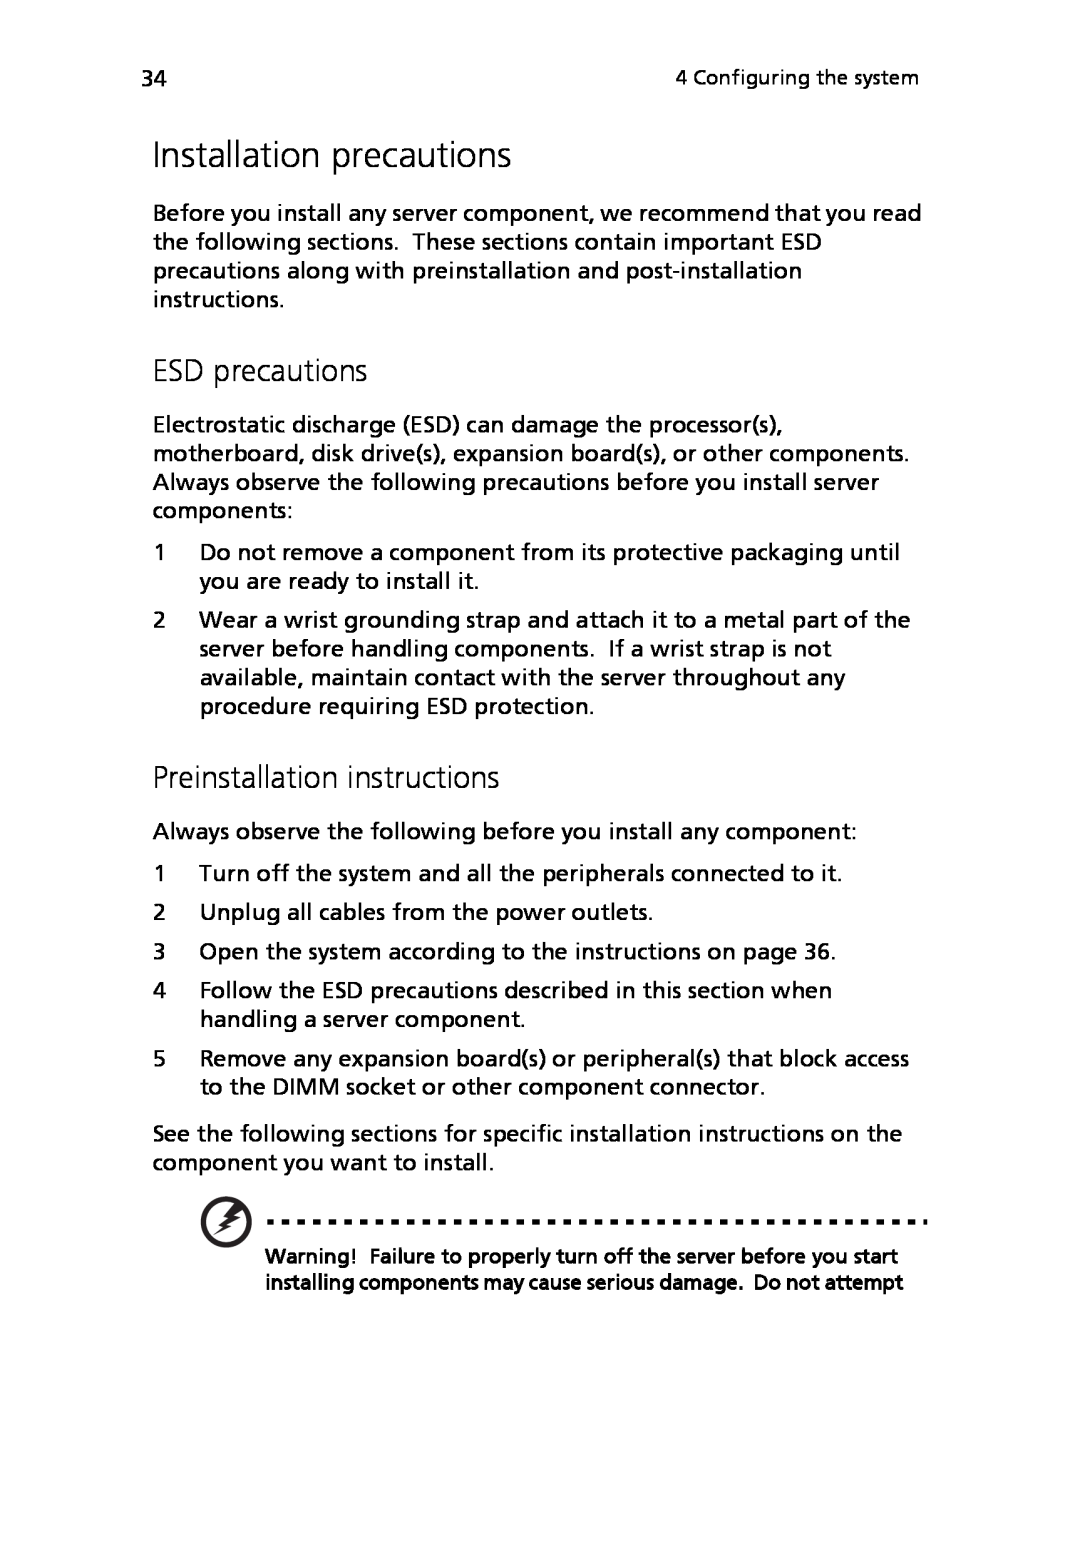 Acer Altos R710 manual Installation precautions, ESD precautions, Preinstallation instructions 